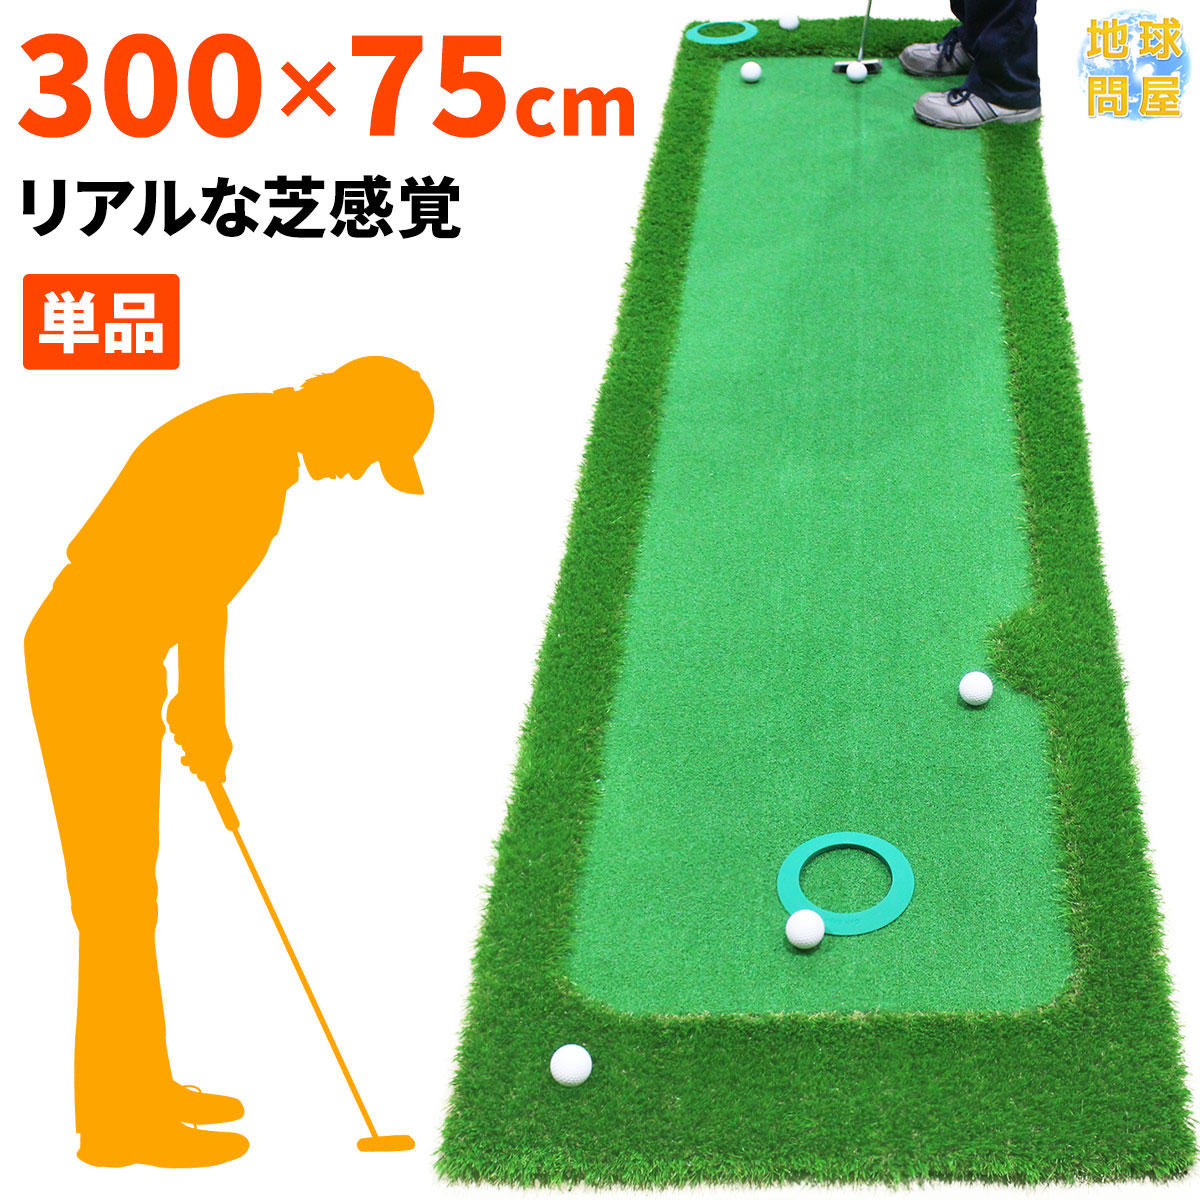 ゴルフ練習器具 パター練習マット パターマット 人工芝の人気商品 